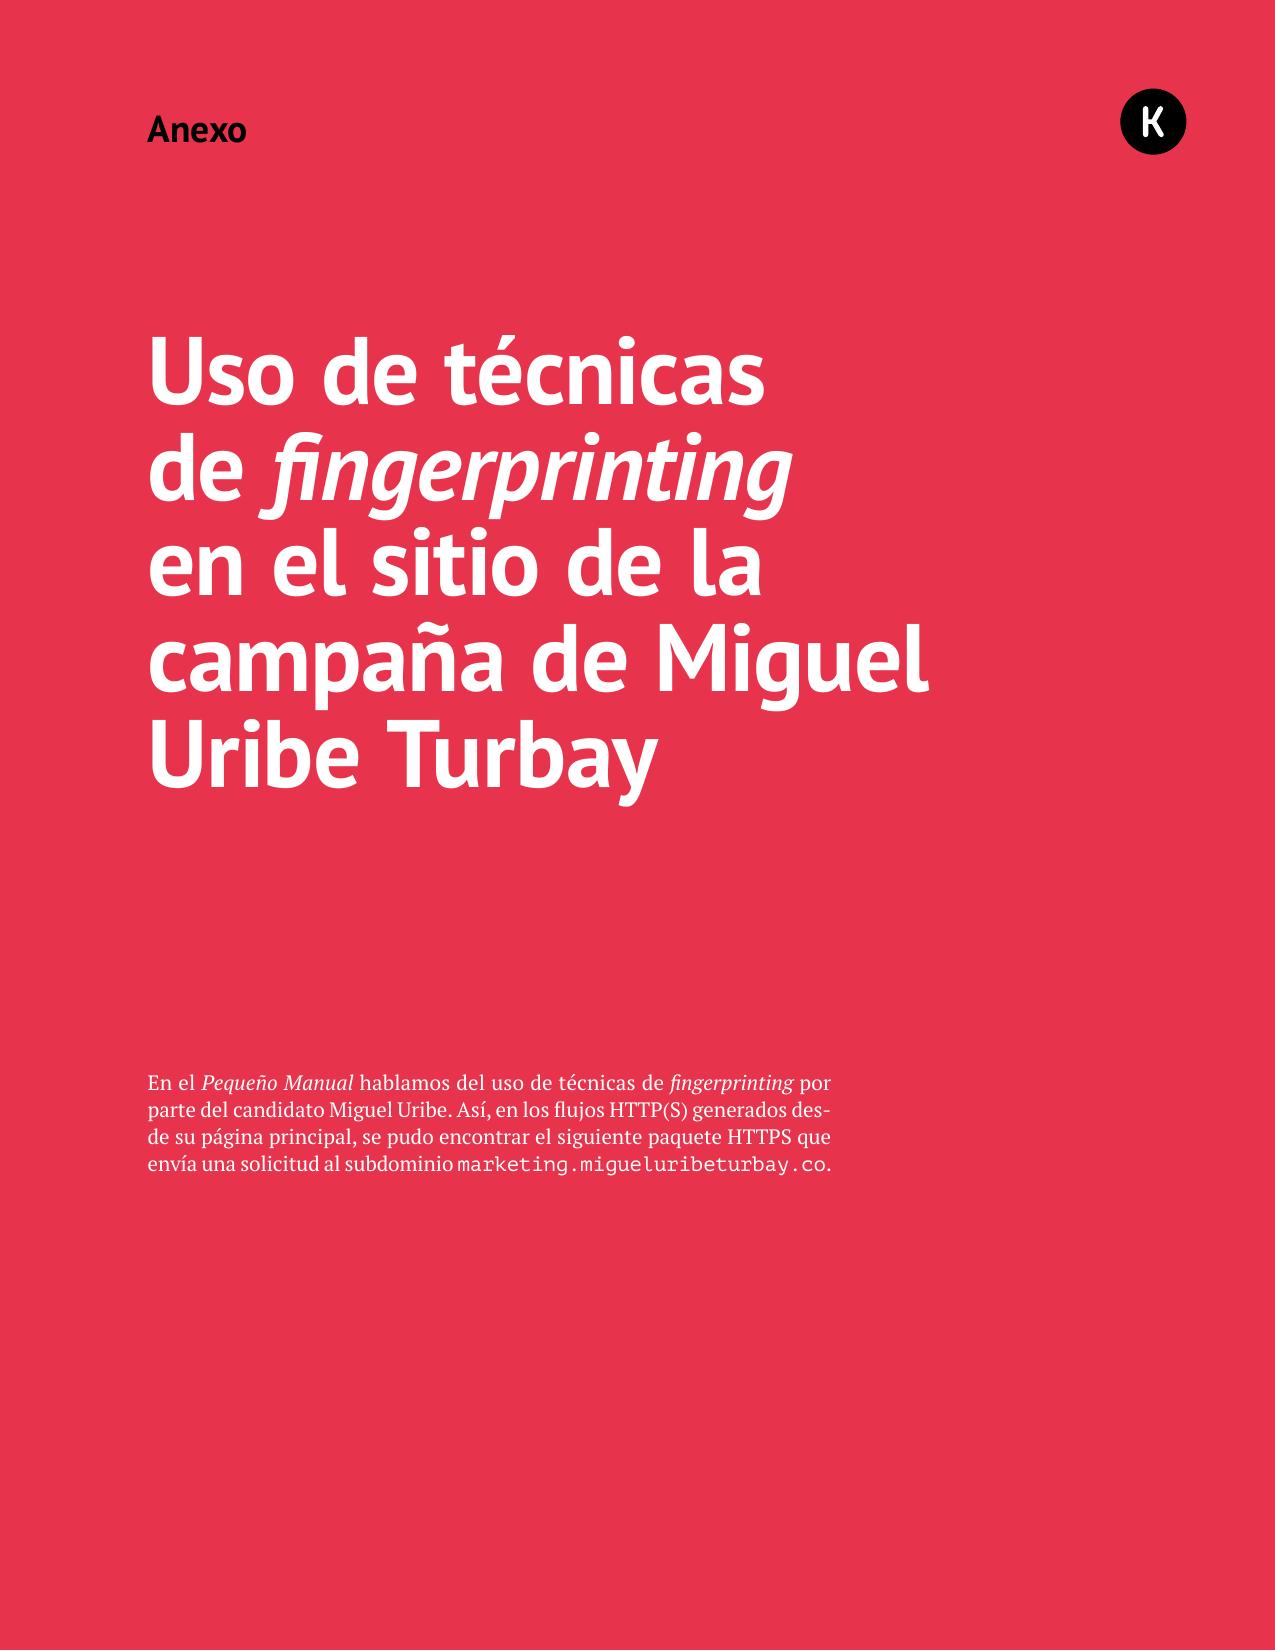 Anexo 07 - Uso de técnicas de fingerprinting en el sitio de la campaña de Miguel Uribe Turbay